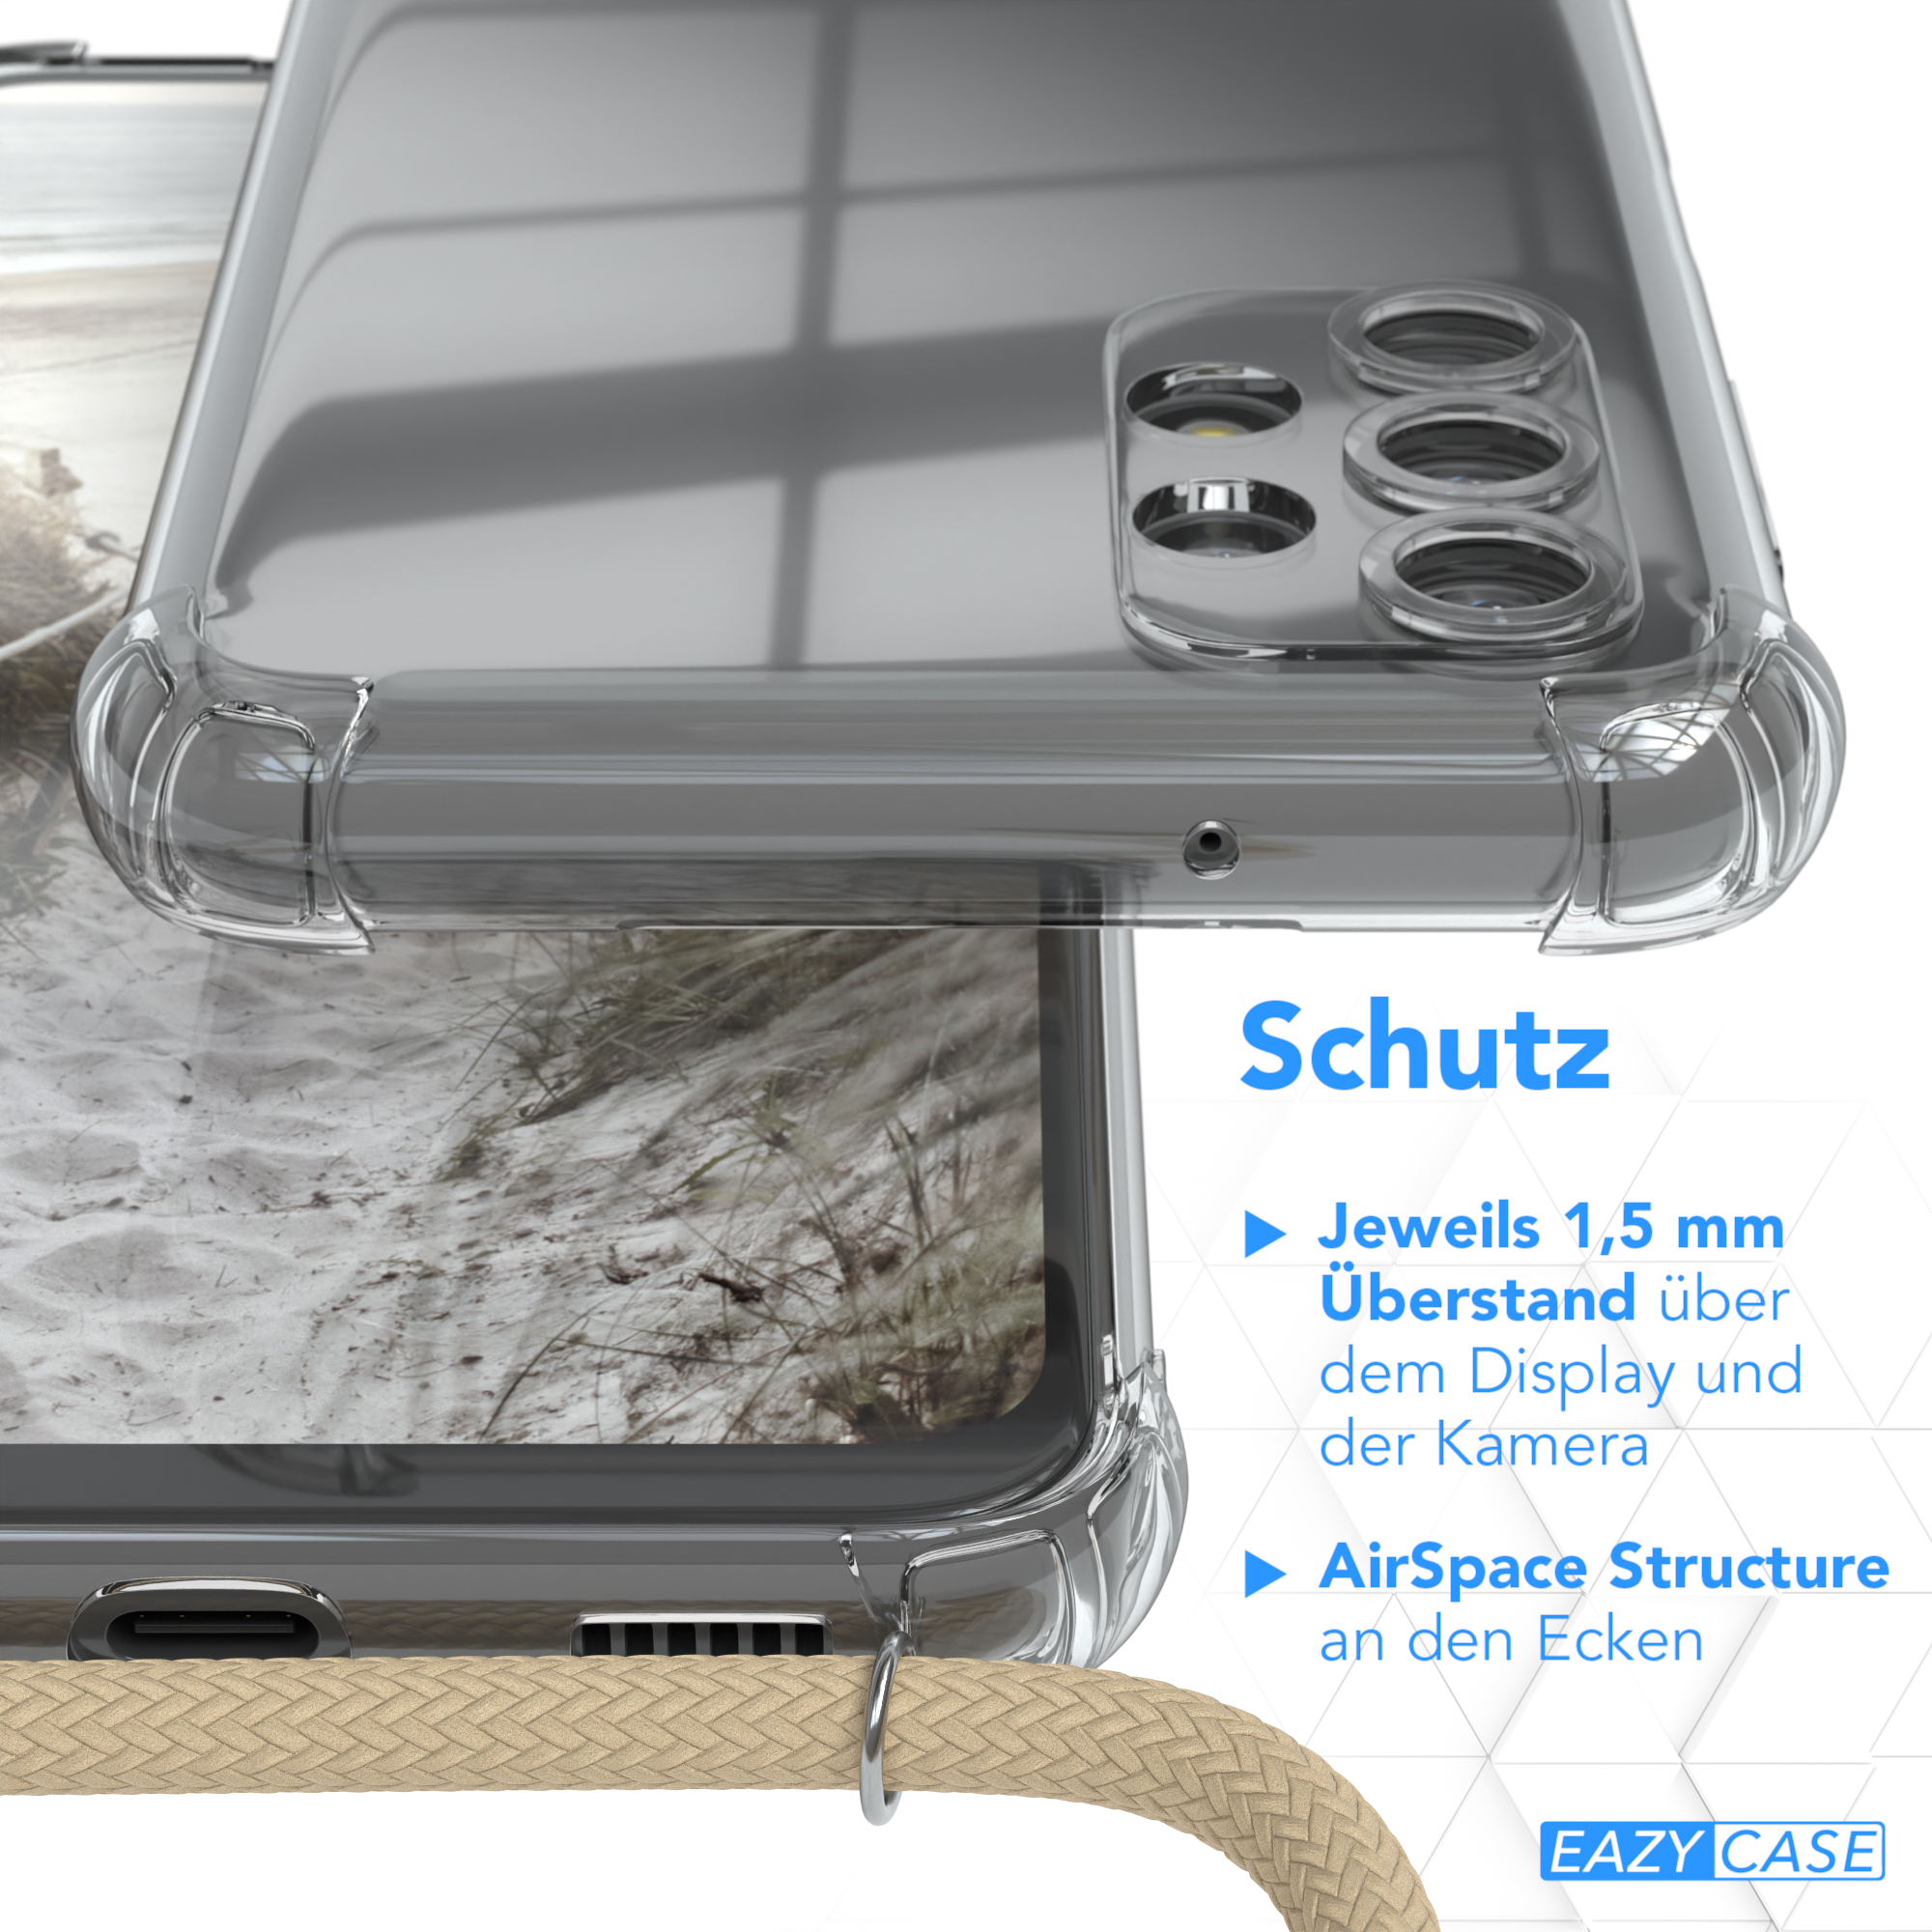 Galaxy Samsung, A13, Umhängeband, Umhängetasche, Clear CASE mit Beige EAZY Taupe Cover